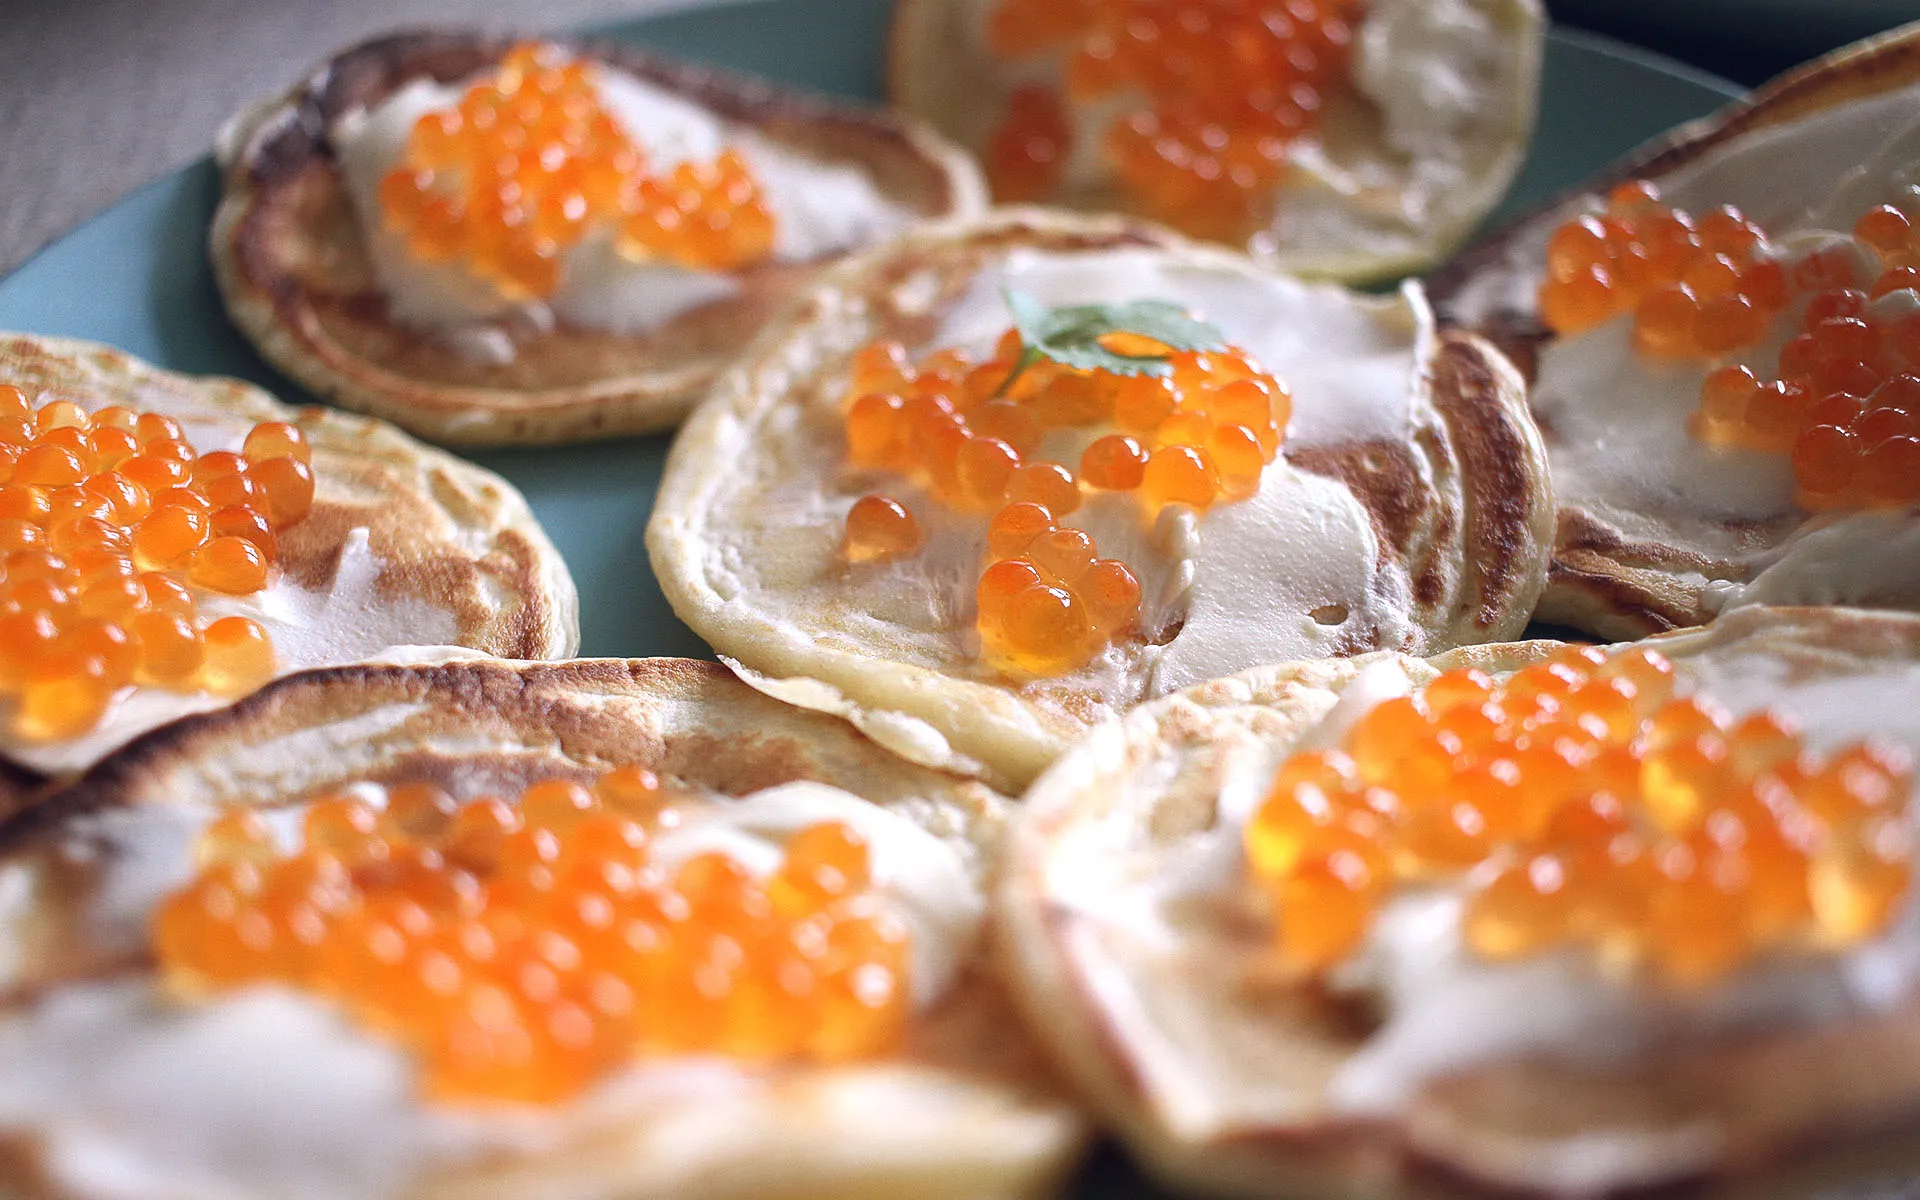 Closeup of pancakes with sourcream and caviar.